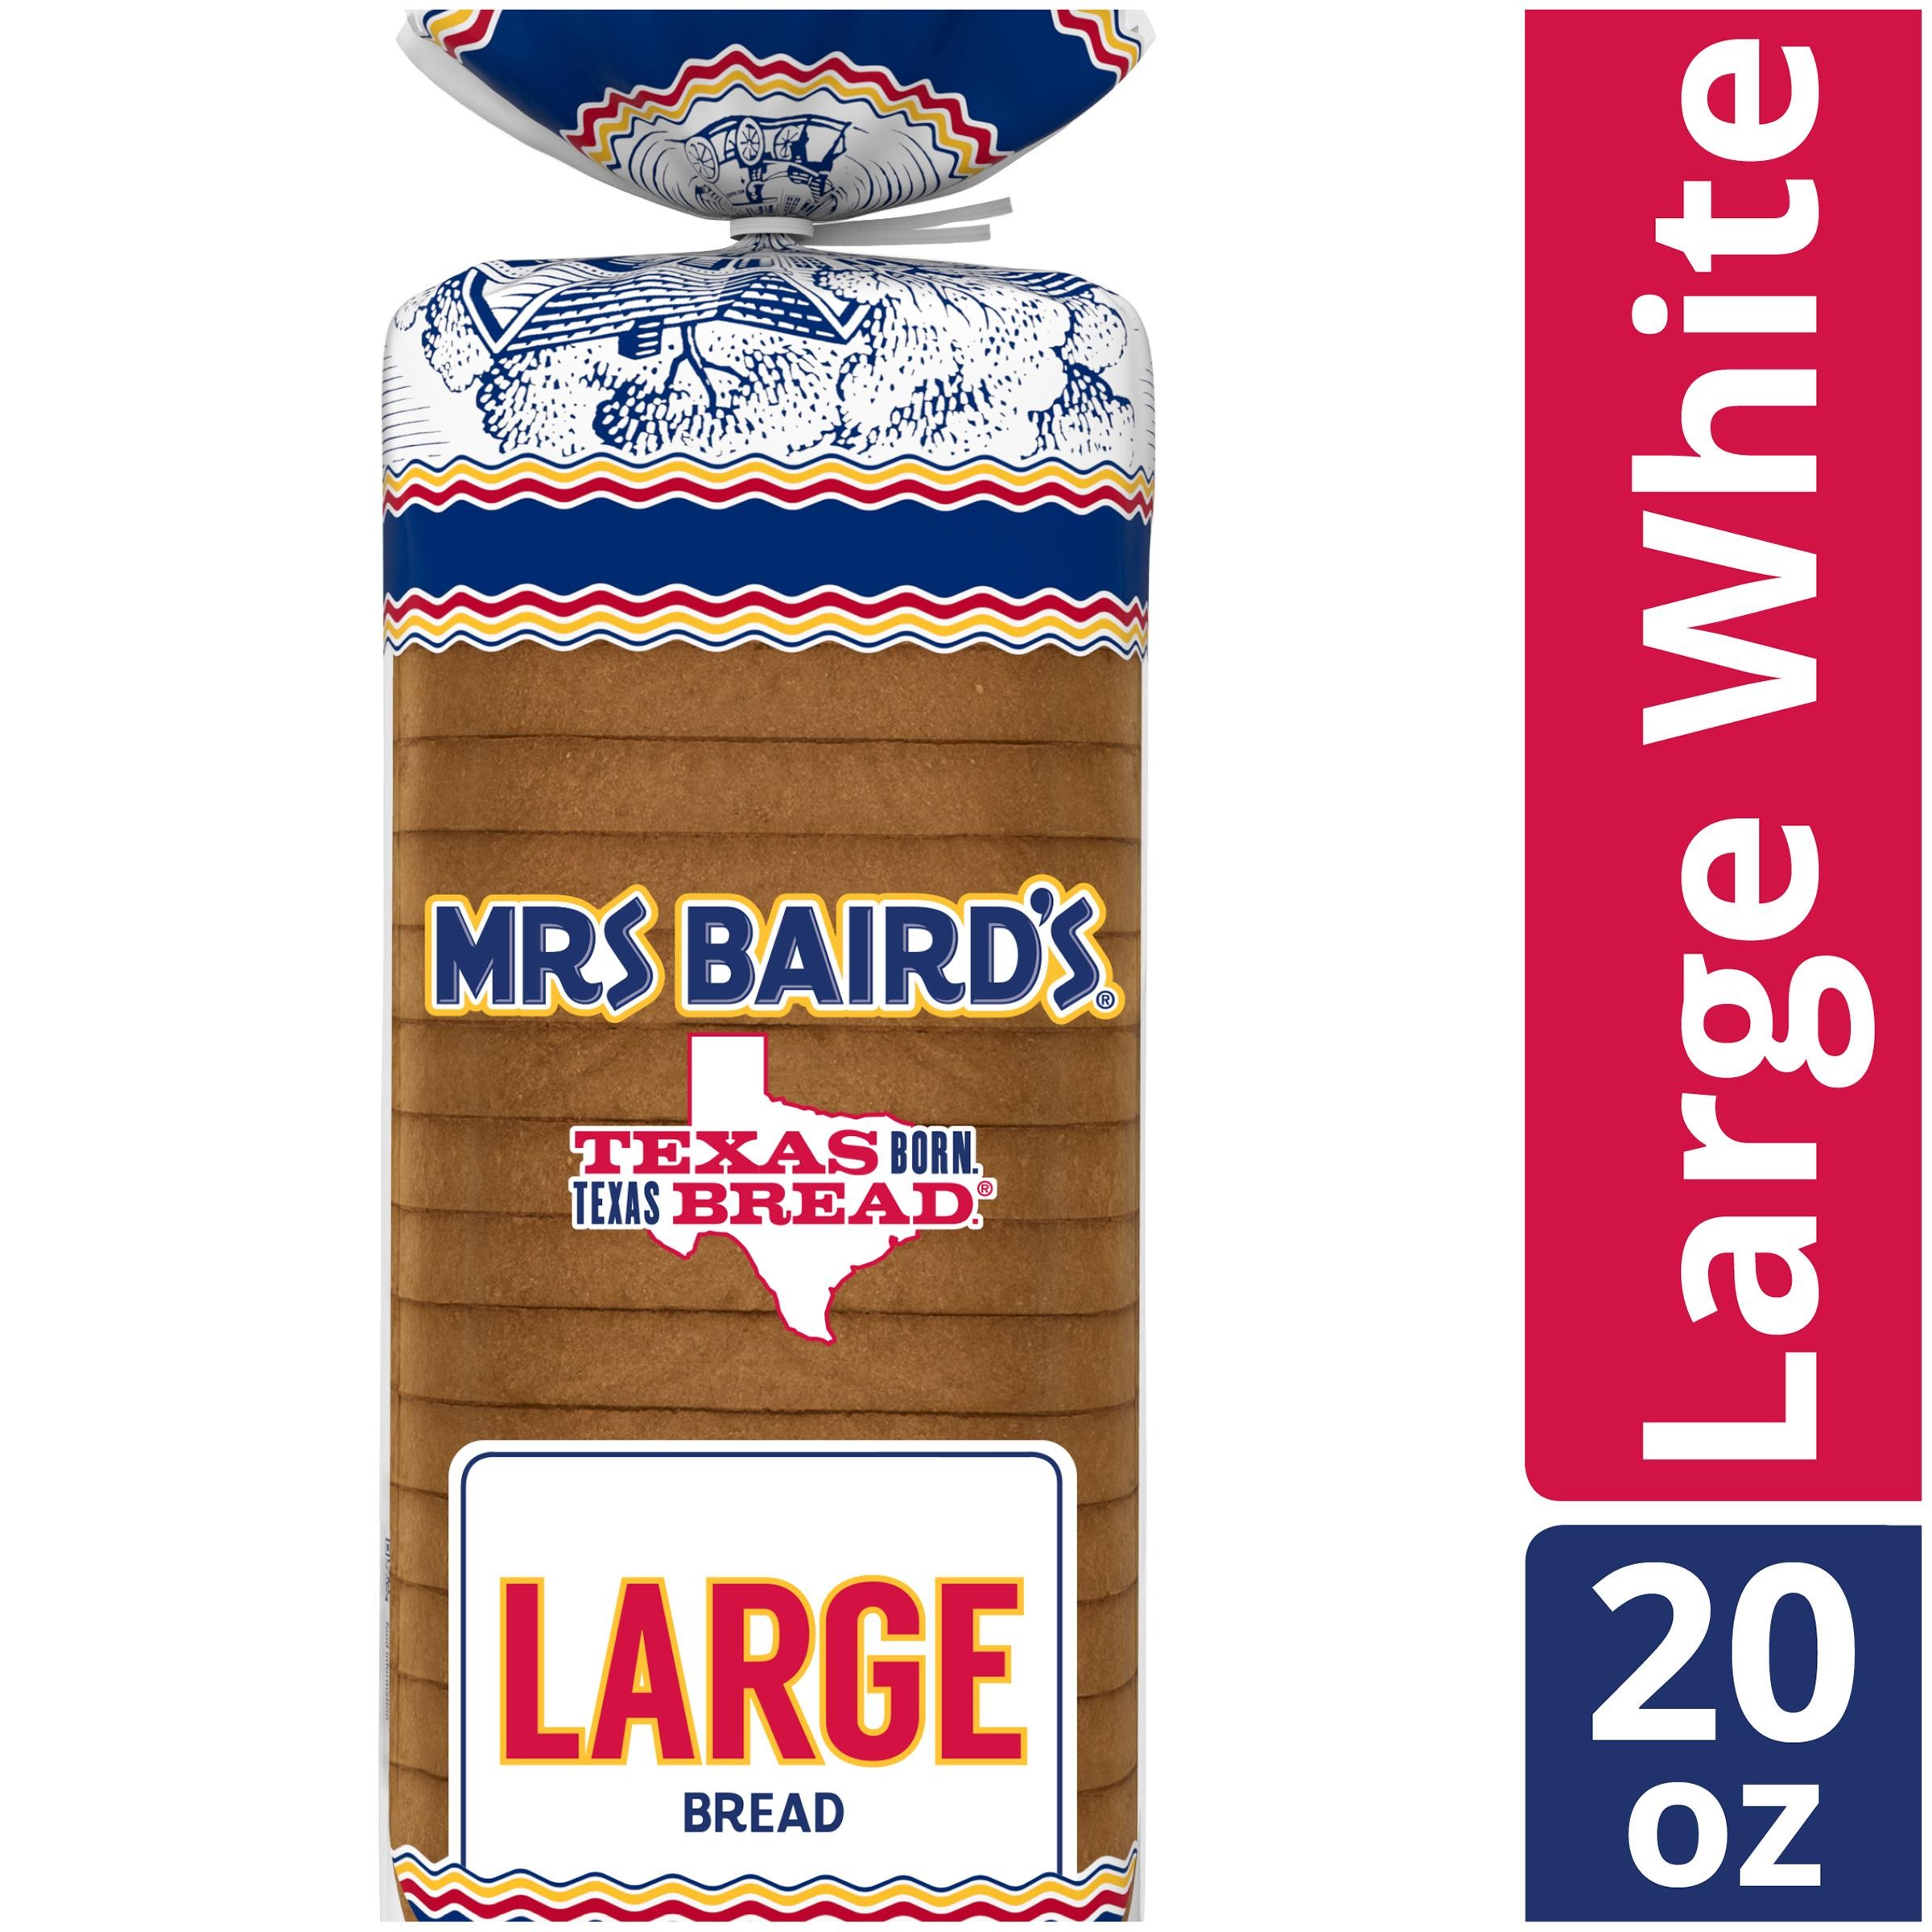 Mrs. Bairds Large White Bread